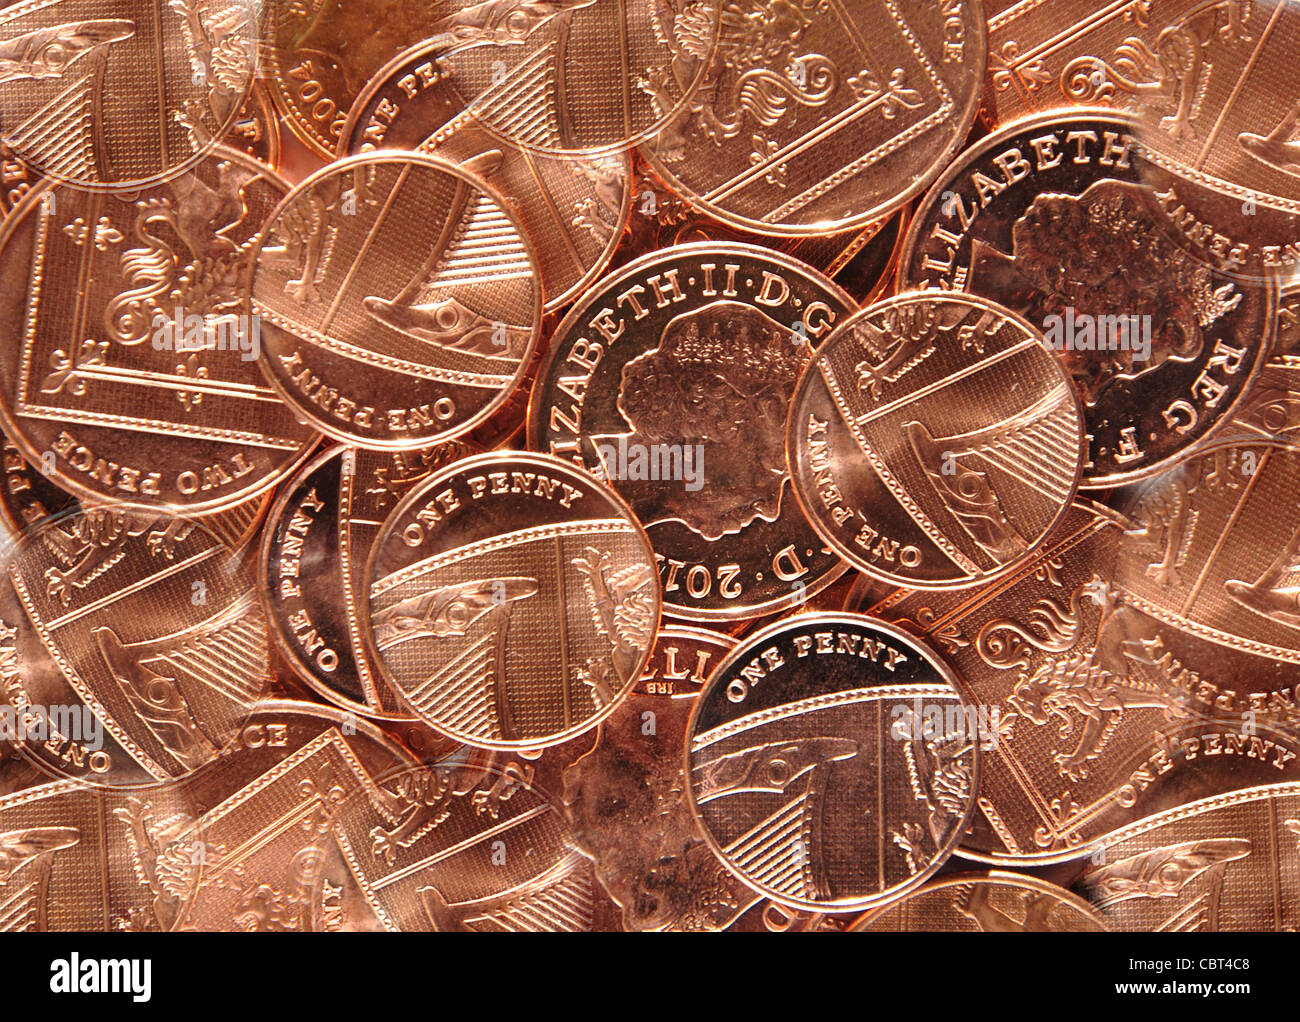 La nouvelle collection de pence, Greater London, Angleterre, Royaume-Uni Banque D'Images